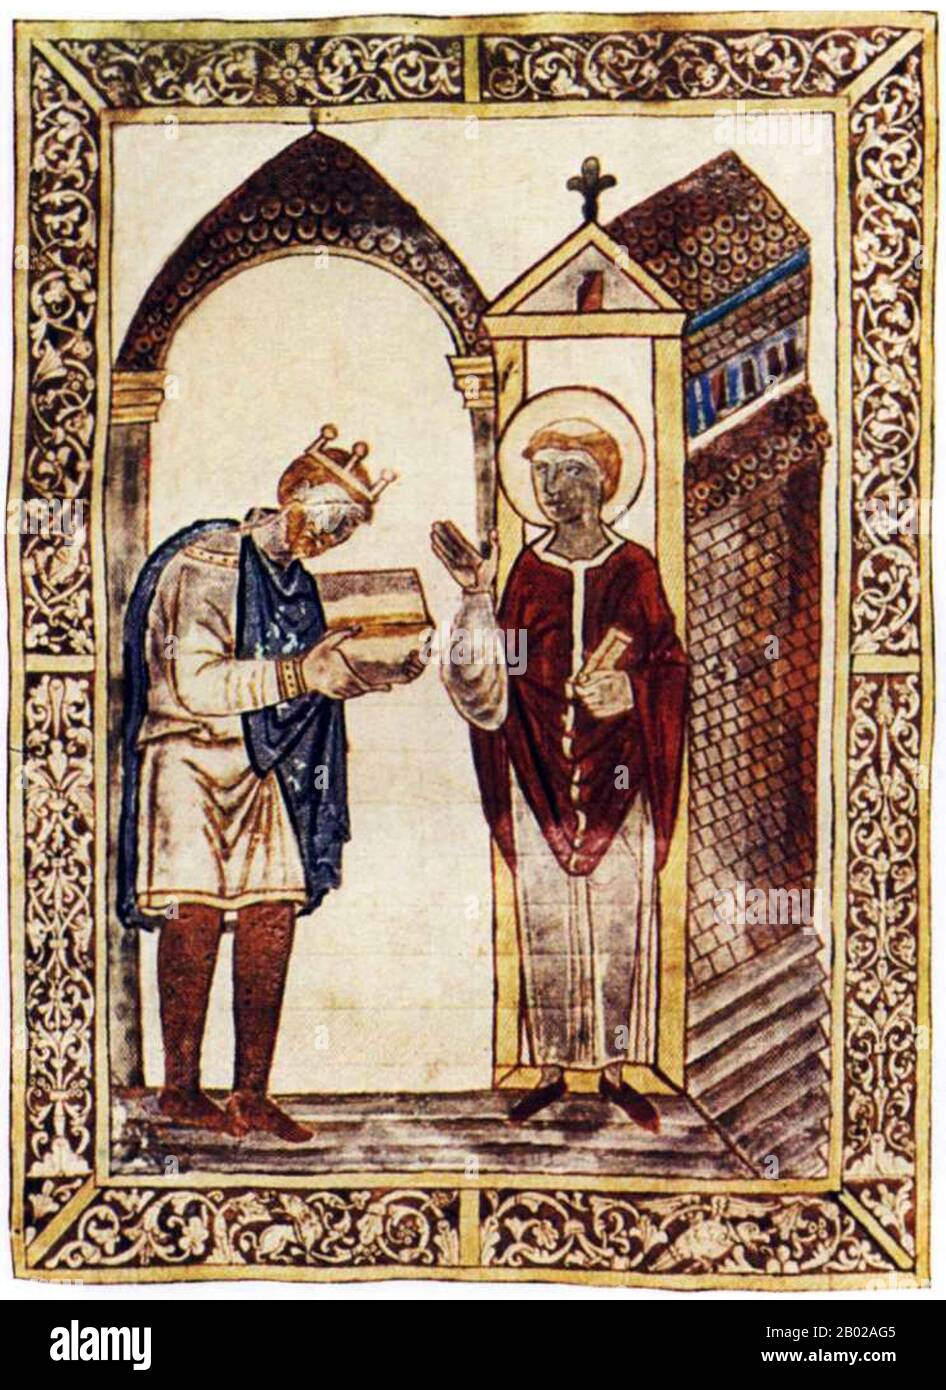 St. Cuthbert (ca. 634 - 20. März 687) war ein angelsächsische Mönch, Bischof und Einsiedler, der mit den Klöstern Melrose und Lindisfarne im Königreich Northumbria in Verbindung gebracht wurde. Nach seinem Tod wurde er einer der wichtigsten mittelalterlichen Heiligen Englands, mit einem Kult, der sich in der Durham Cathedral zentrierte. Cuthbert gilt als Schutzpatron Nordenglands. Sein Festtag ist der 20. März. Er wuchs in der Nähe des neuen Ablegers von Lindisfarne in der Melrose Abbey auf, die heute in Schottland liegt, damals aber in Northumbria war. Er hatte beschlossen, Mönch zu werden, nachdem er 651 eine Vision davon gesehen hatte, dass der St Aidan, der ist Stockfoto